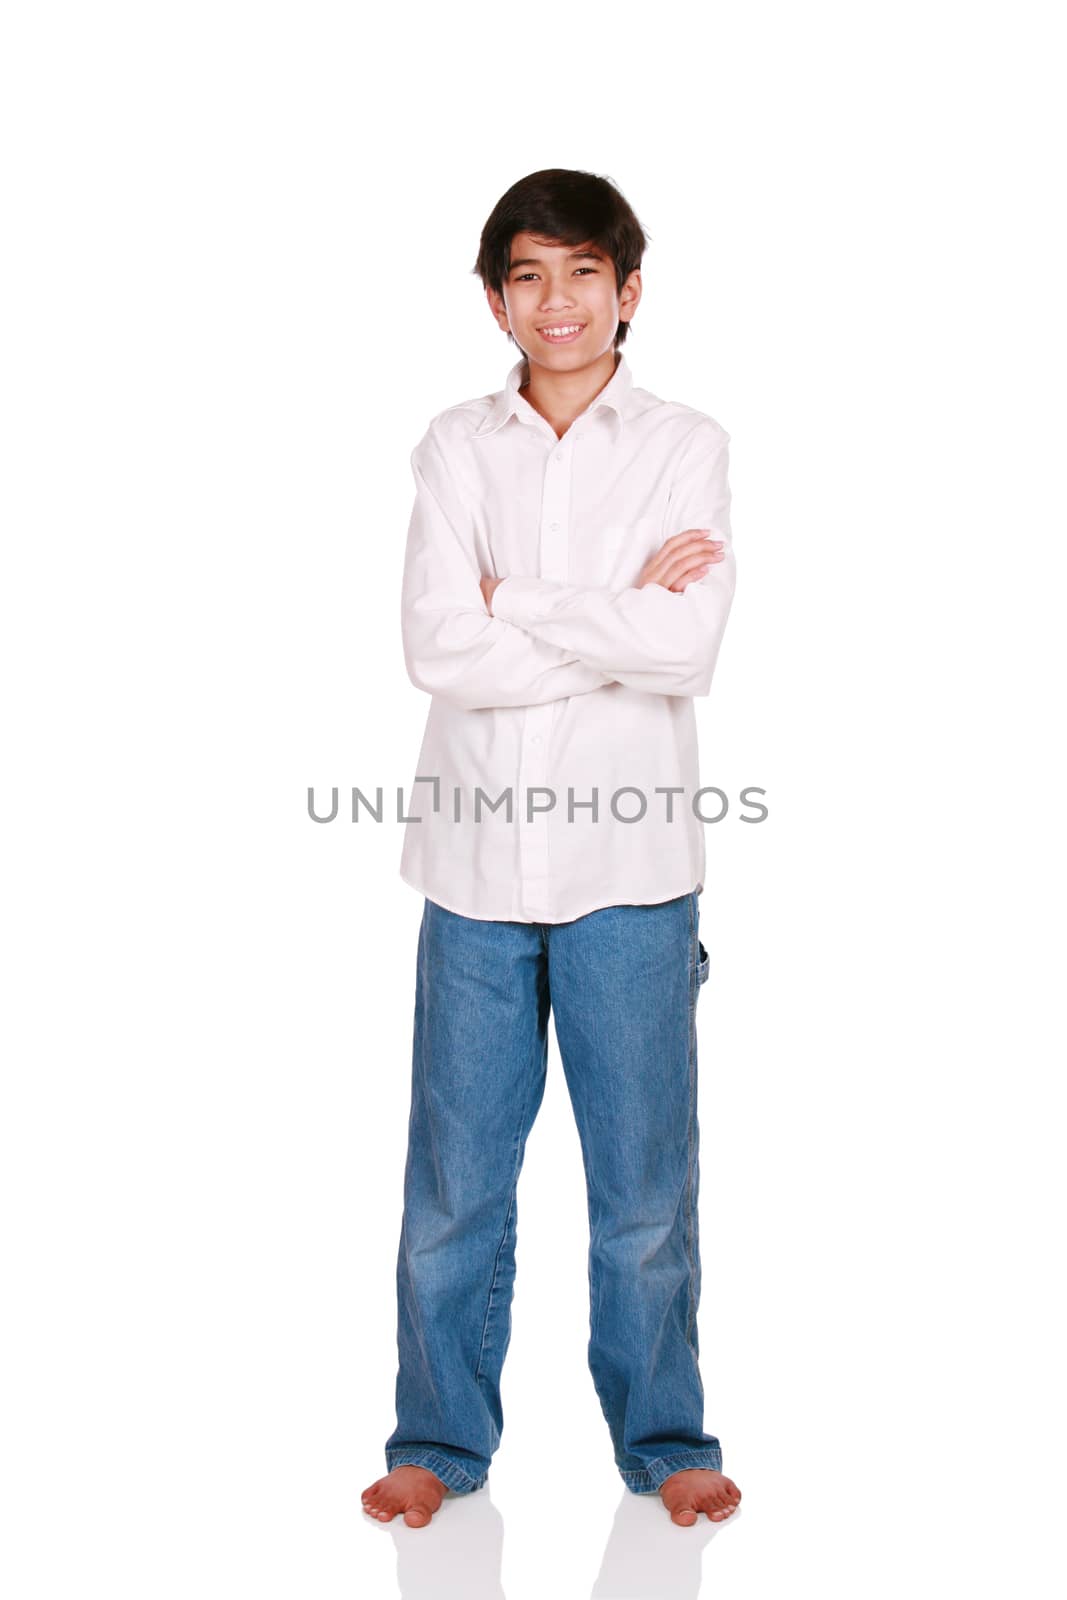 Twelve year old boy standing arms crossed,